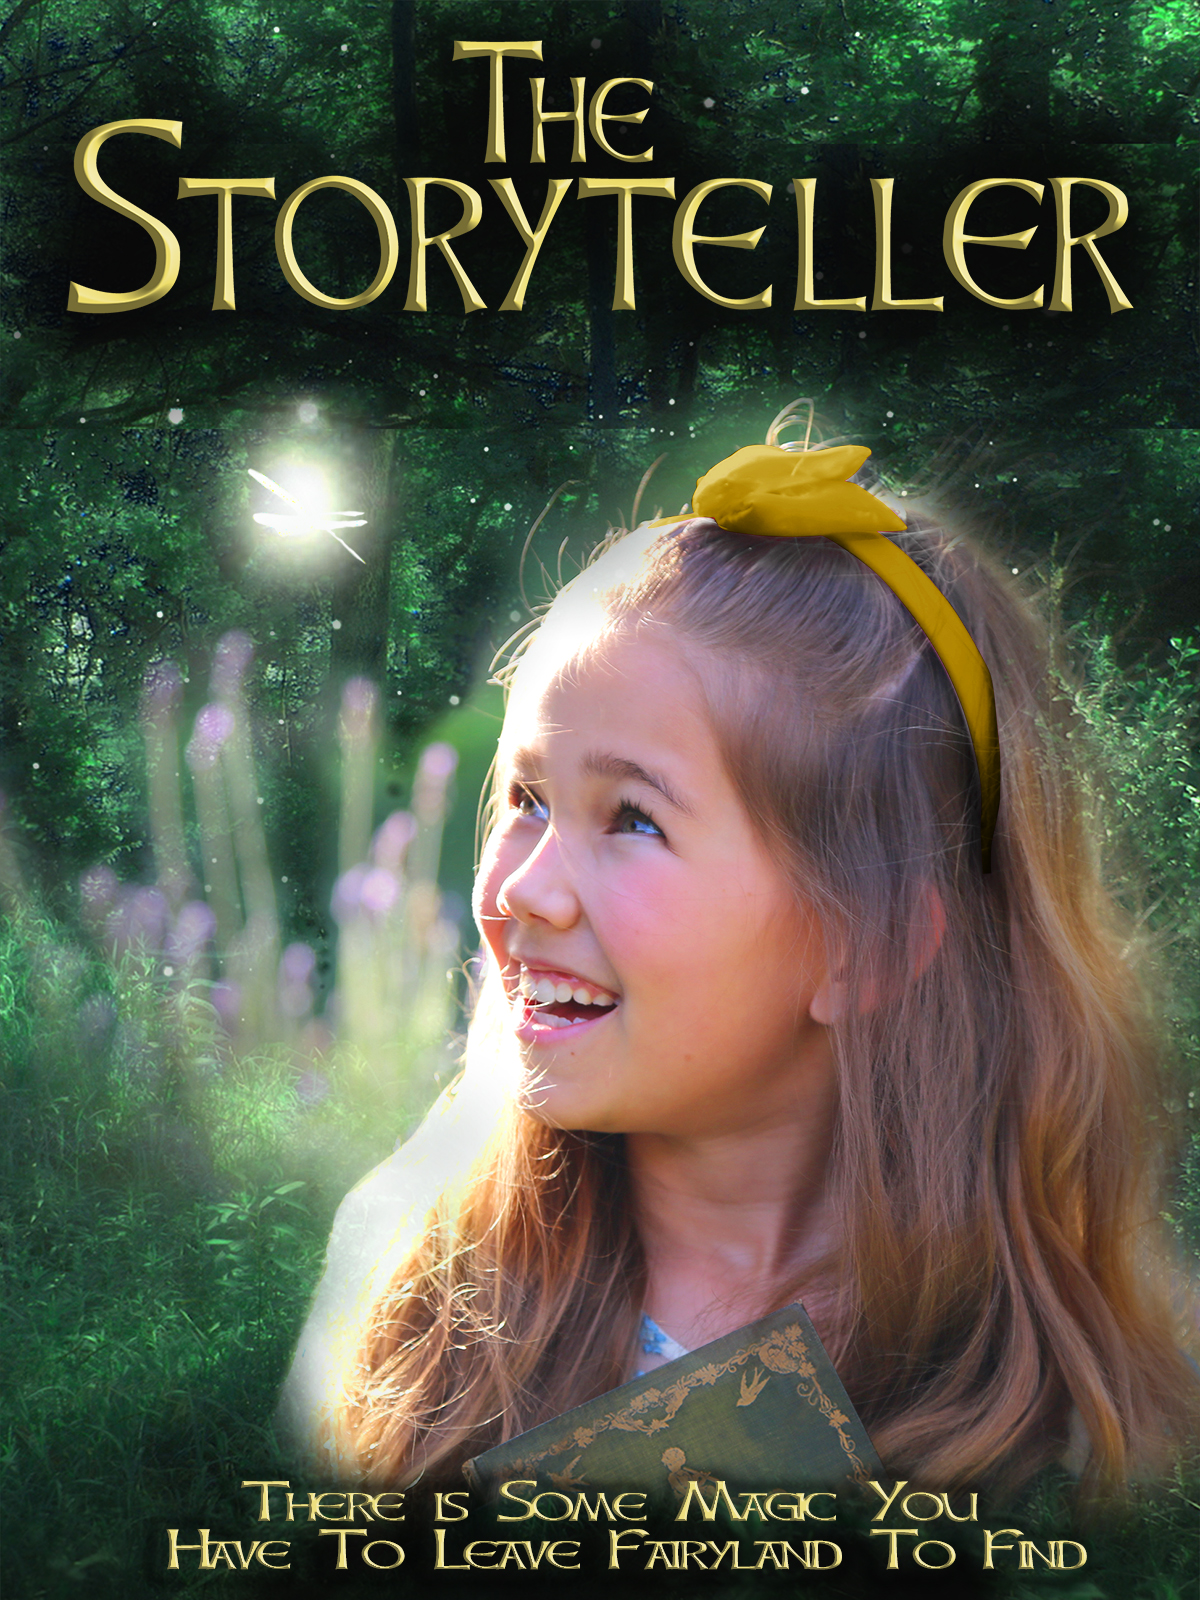 Nonton film The Storyteller layarkaca21 indoxx1 ganool online streaming terbaru